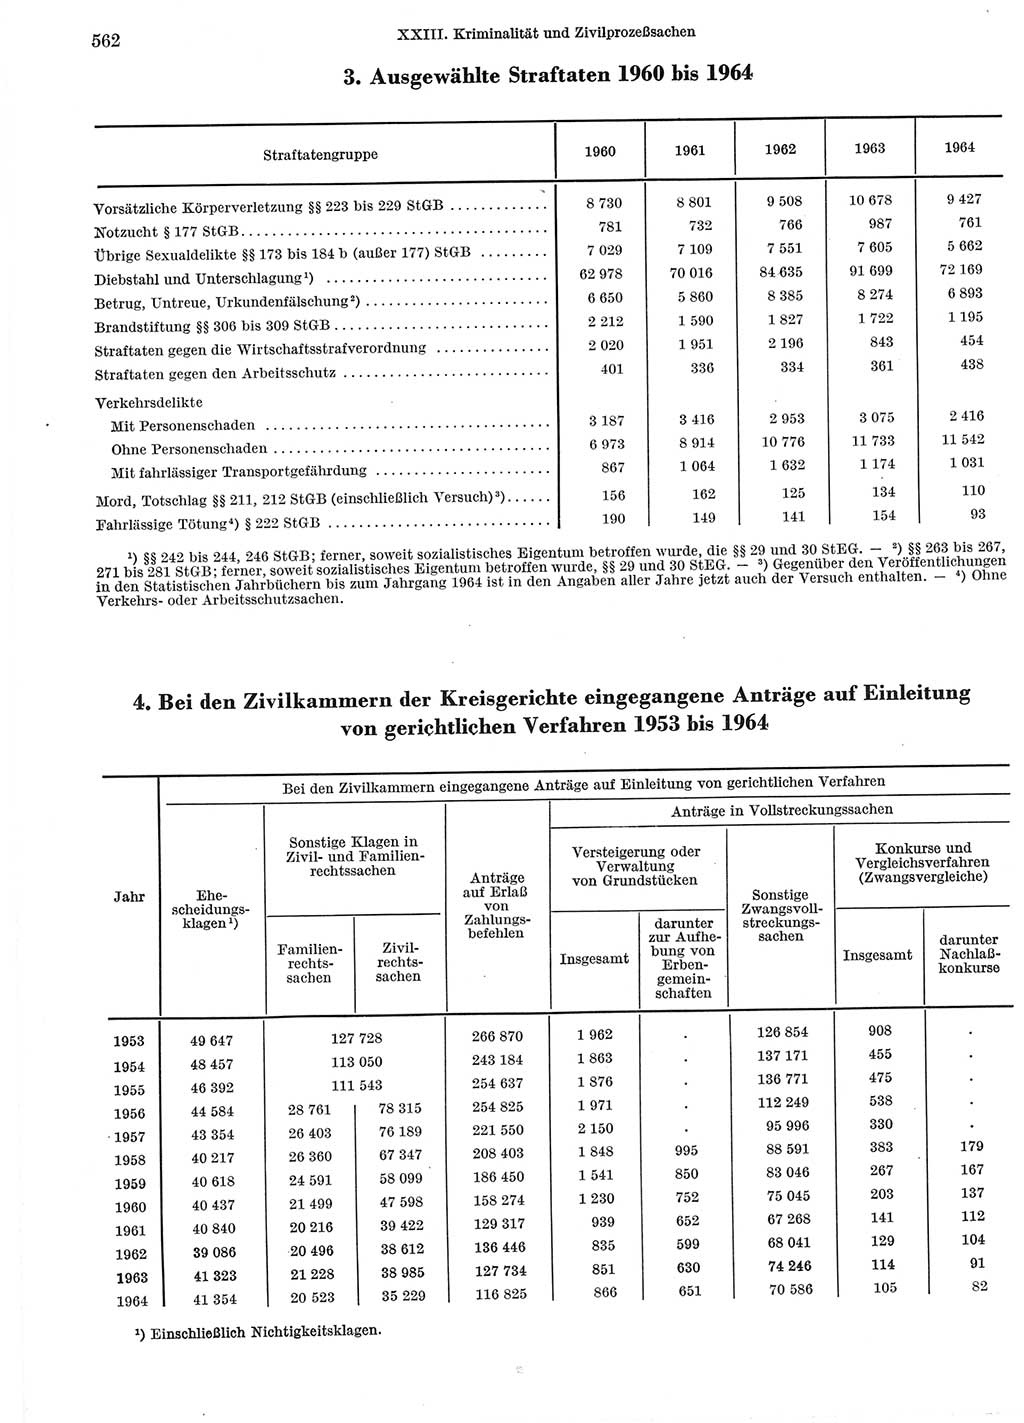 Statistisches Jahrbuch der Deutschen Demokratischen Republik (DDR) 1965, Seite 562 (Stat. Jb. DDR 1965, S. 562)